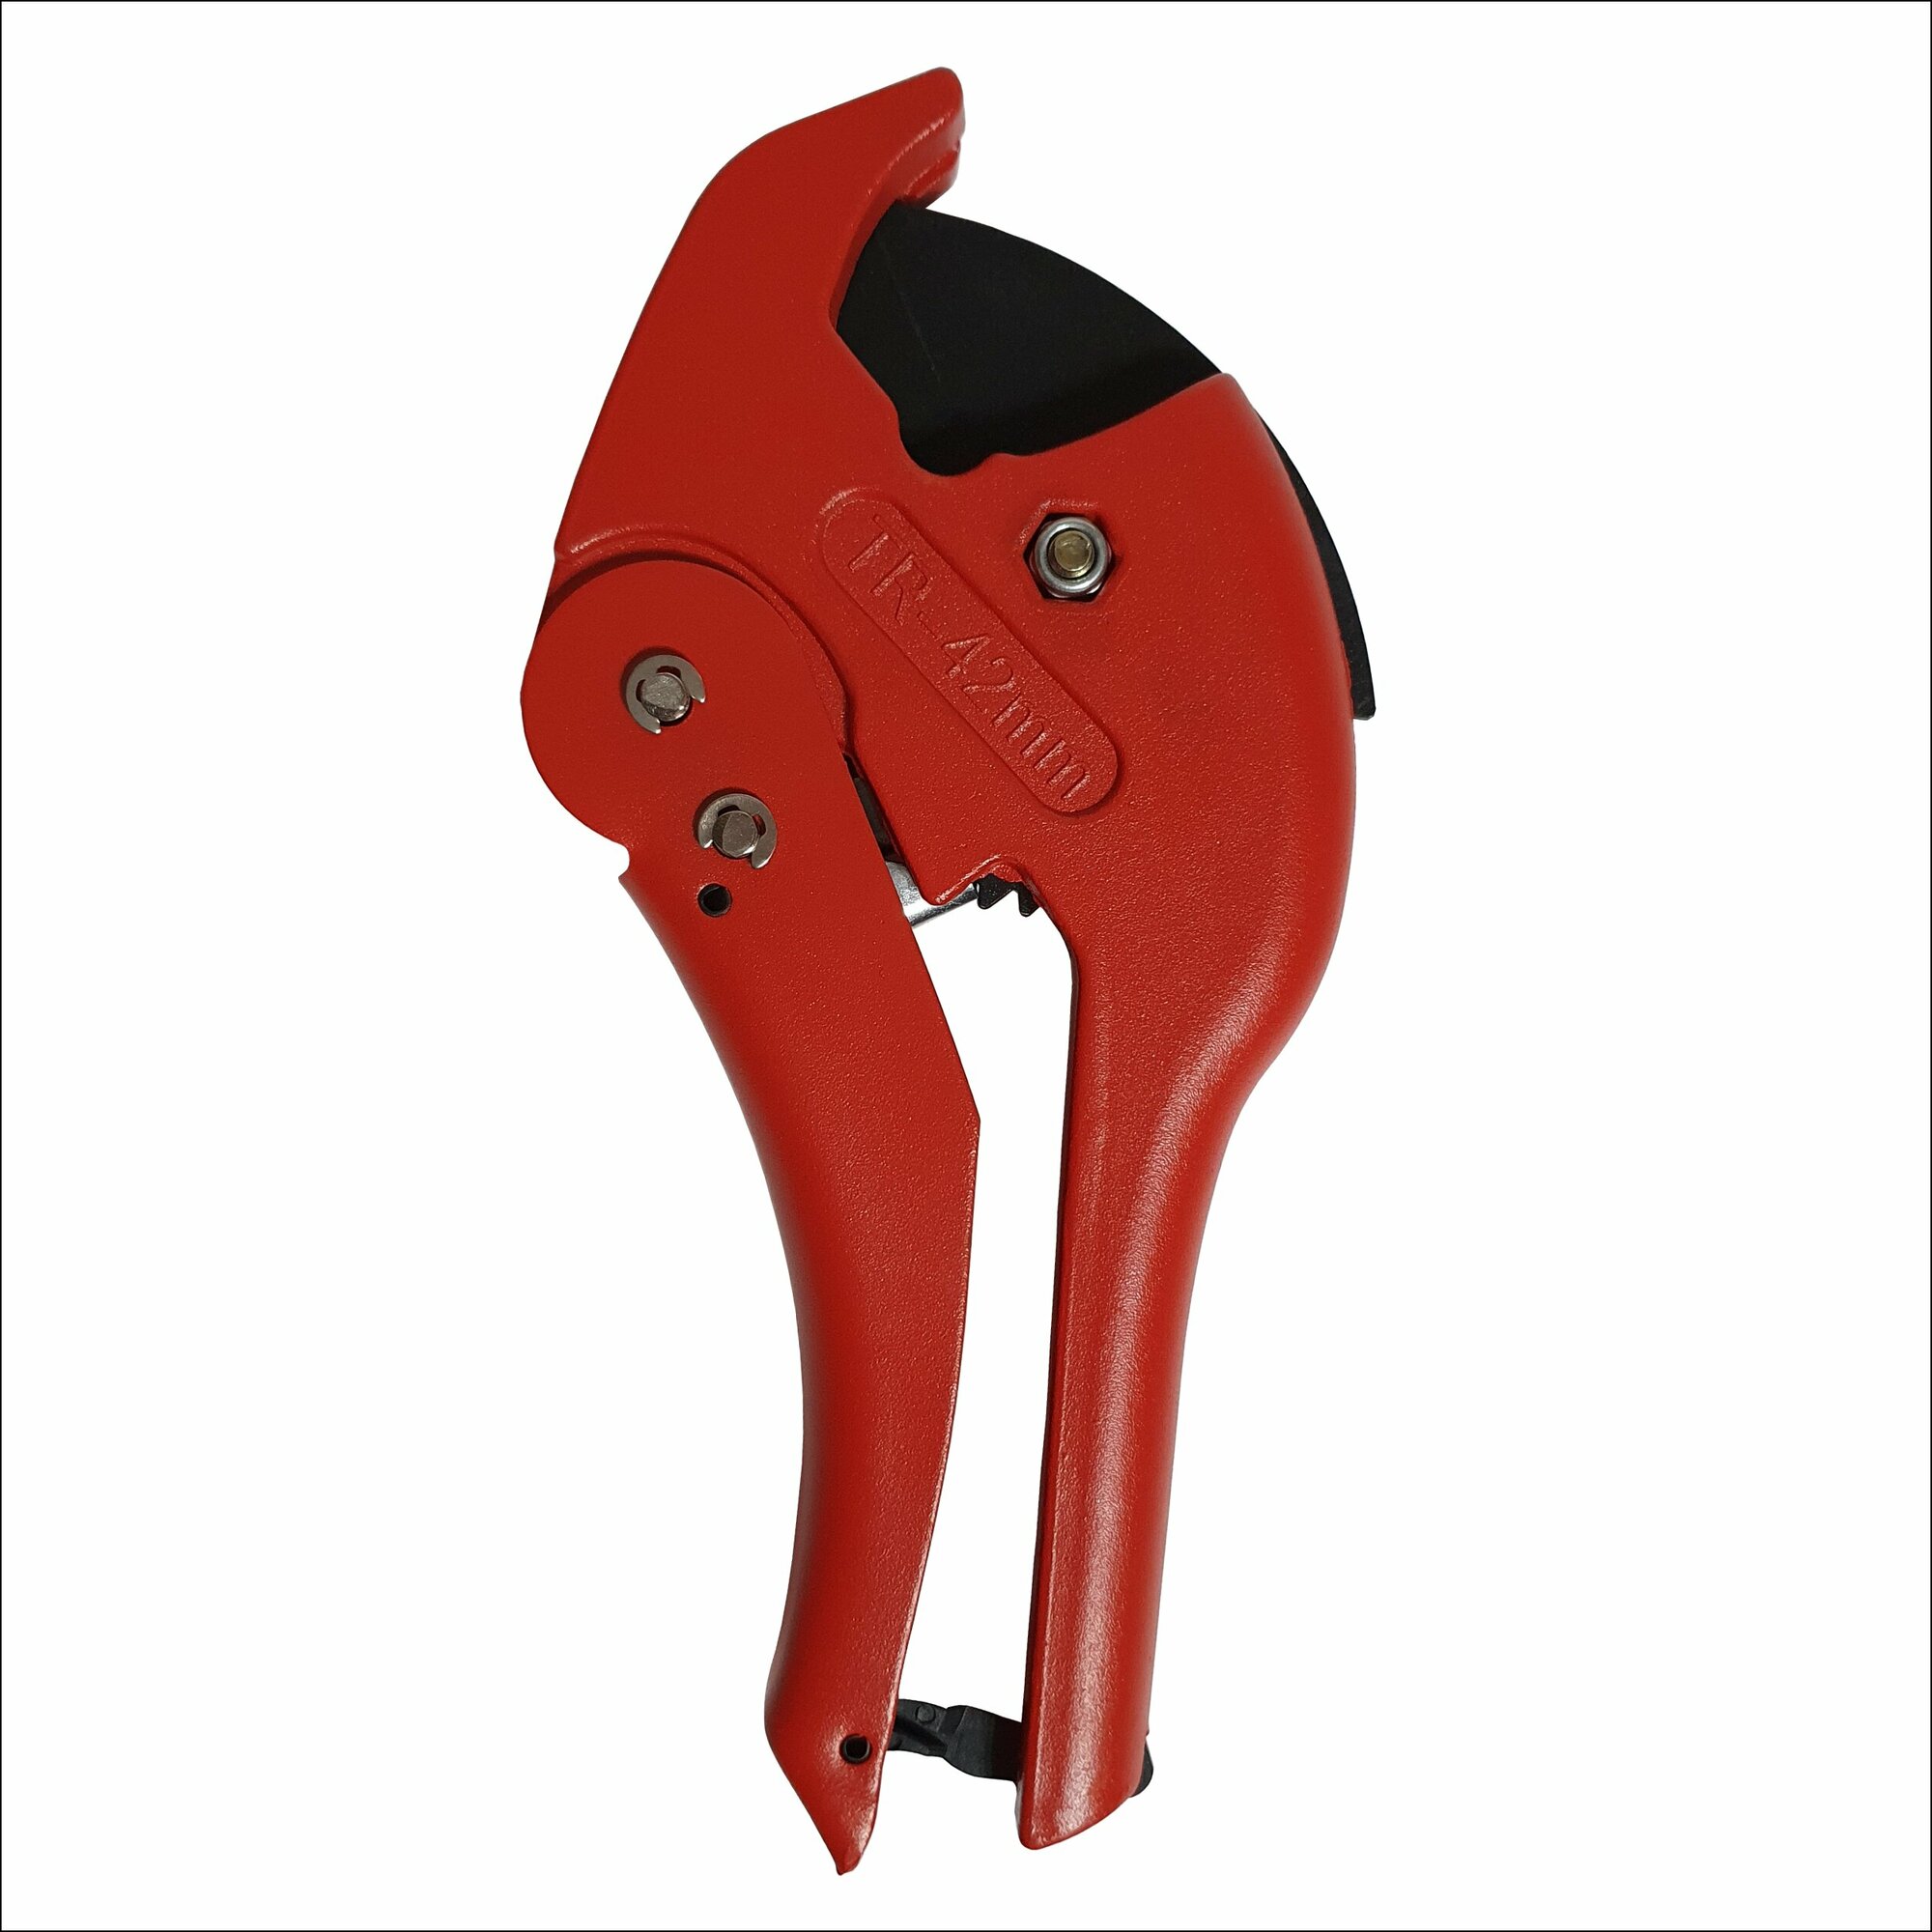 Ножницы усиленные для резки ПВХ труб VER8 05 D до 42мм/ ручной труборез/ ножницы для металлопластиковых труб красные